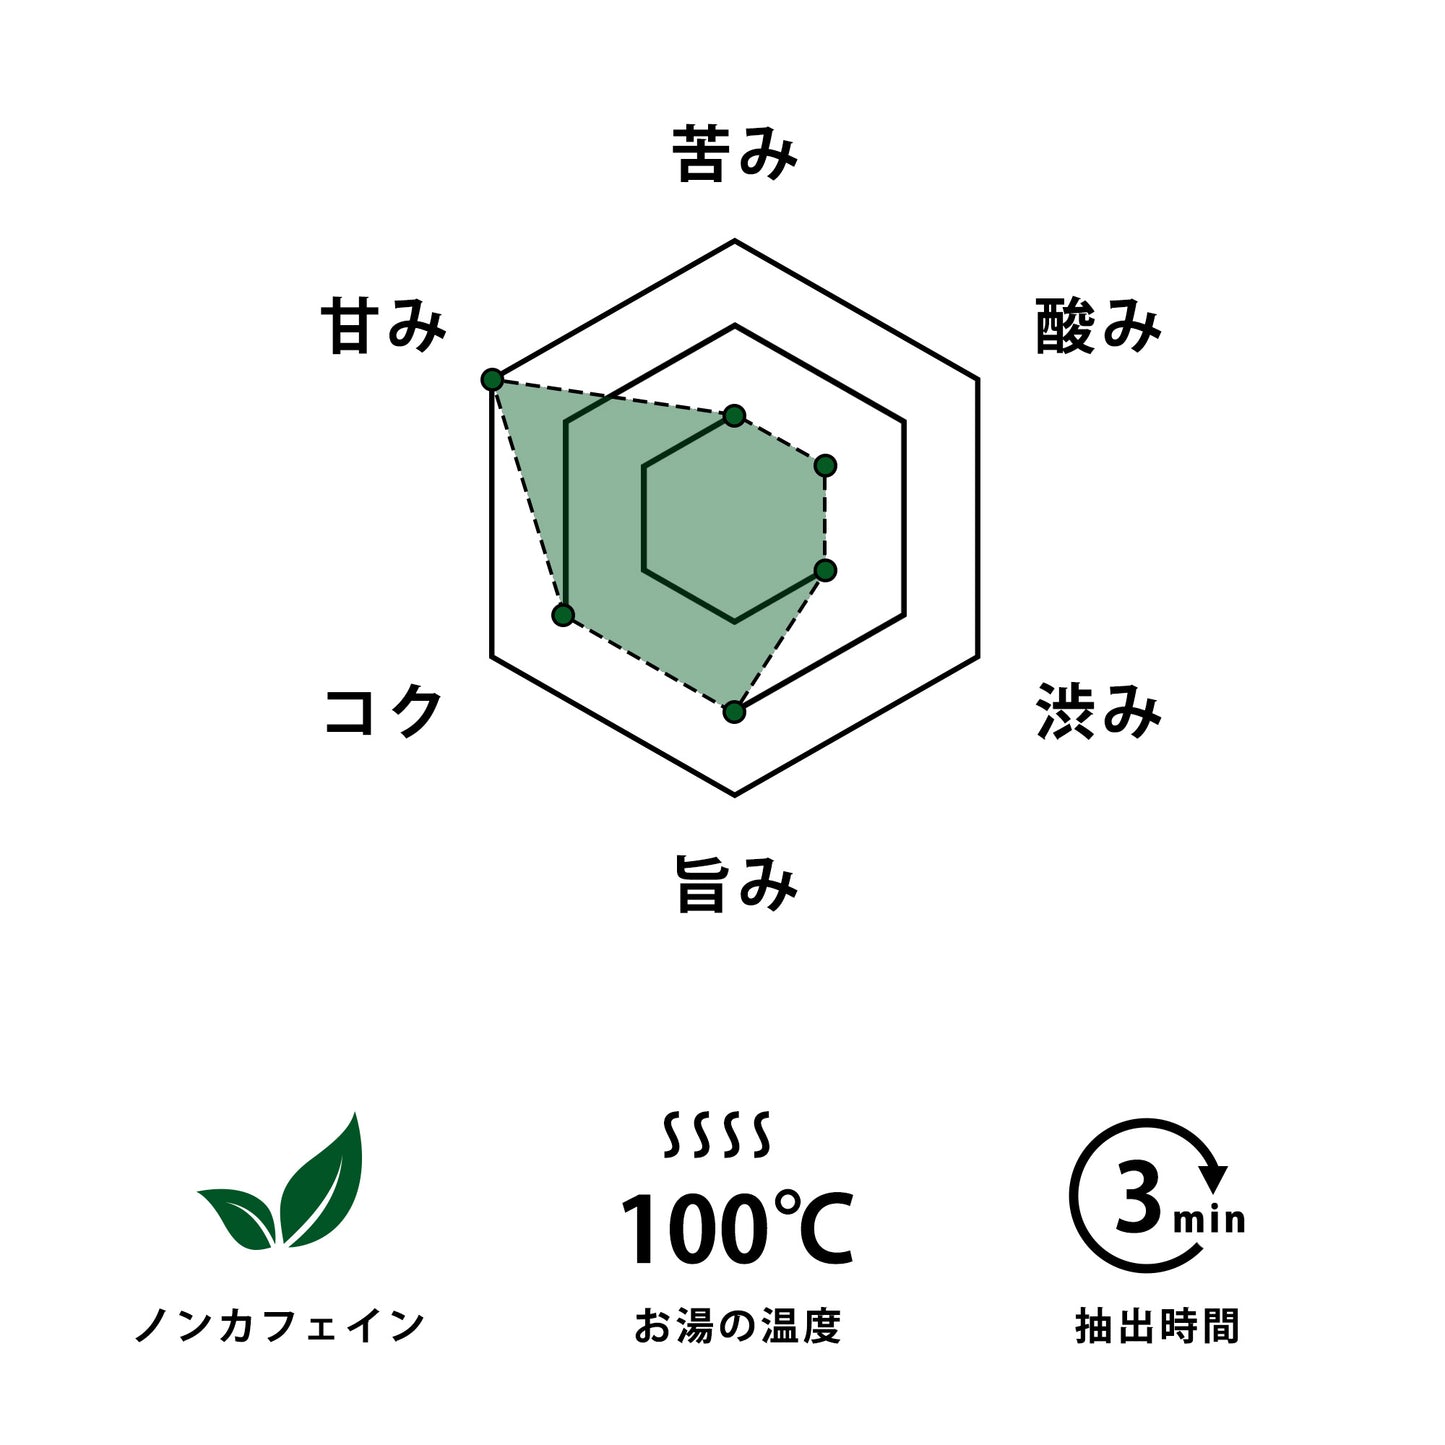 ヨモギ茶 × 1パック(1g×15包入り)